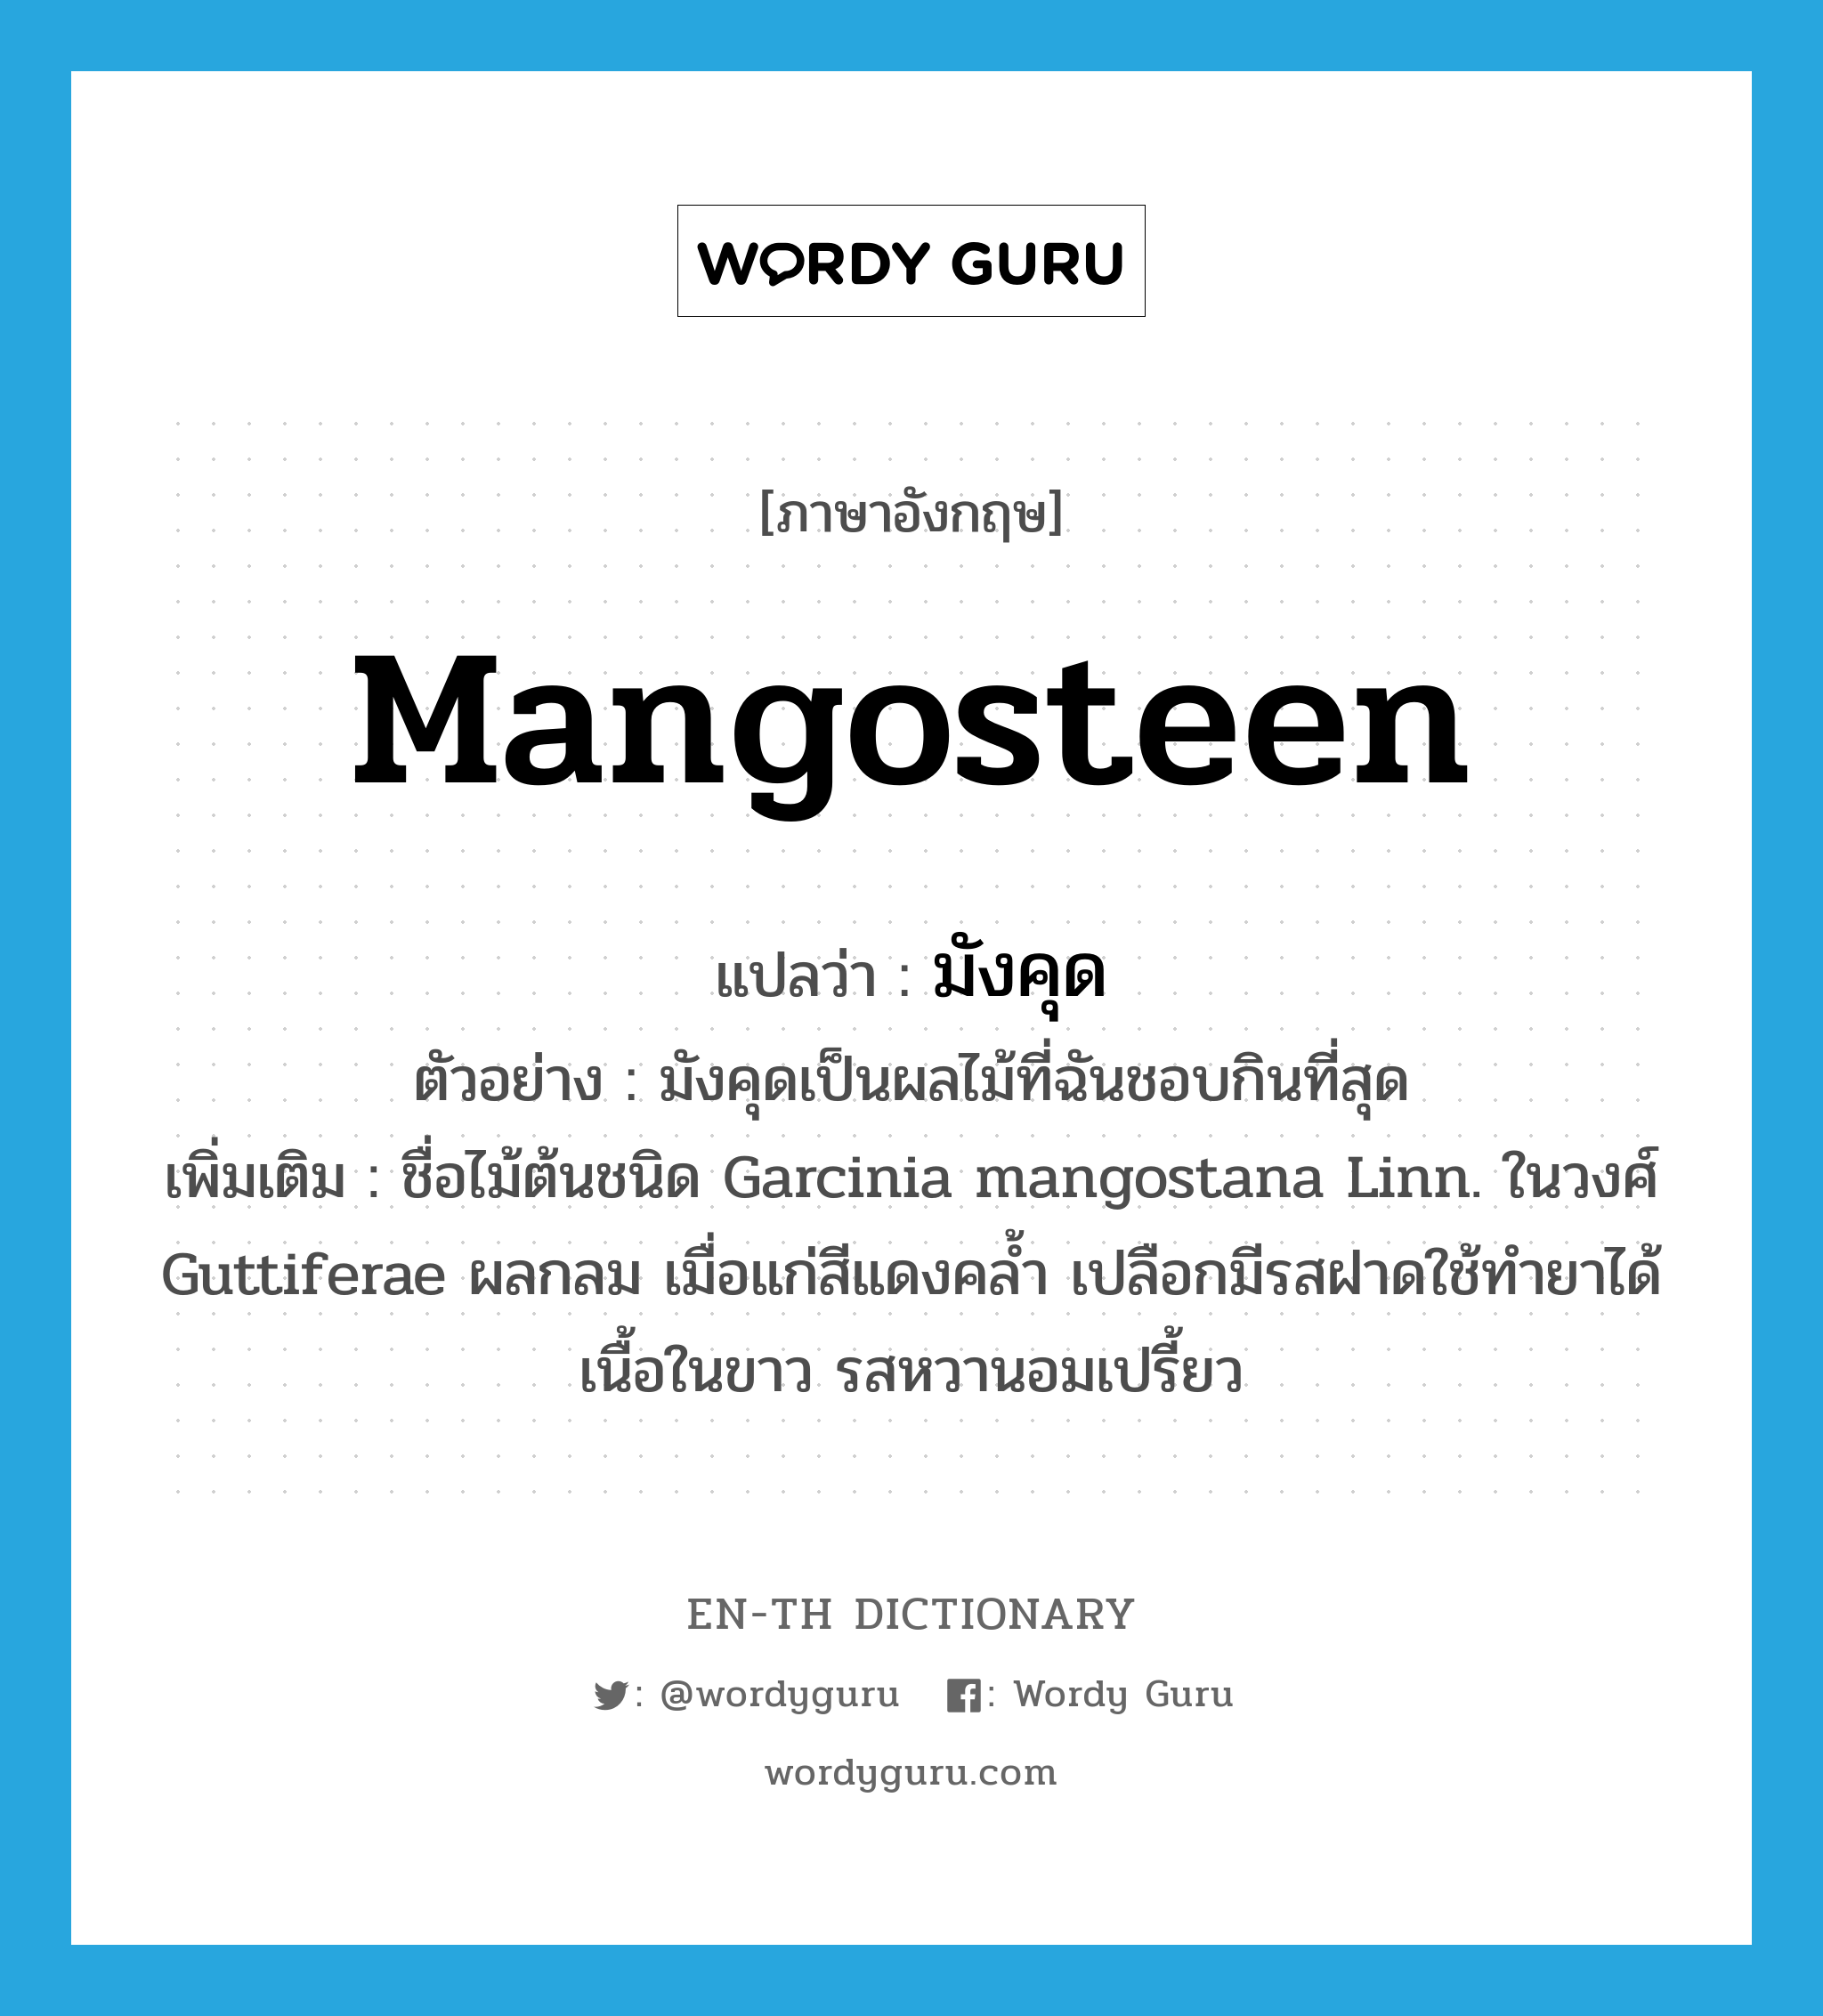 mangosteen แปลว่า?, คำศัพท์ภาษาอังกฤษ mangosteen แปลว่า มังคุด ประเภท N ตัวอย่าง มังคุดเป็นผลไม้ที่ฉันชอบกินที่สุด เพิ่มเติม ชื่อไม้ต้นชนิด Garcinia mangostana Linn. ในวงศ์ Guttiferae ผลกลม เมื่อแก่สีแดงคล้ำ เปลือกมีรสฝาดใช้ทำยาได้ เนื้อในขาว รสหวานอมเปรี้ยว หมวด N